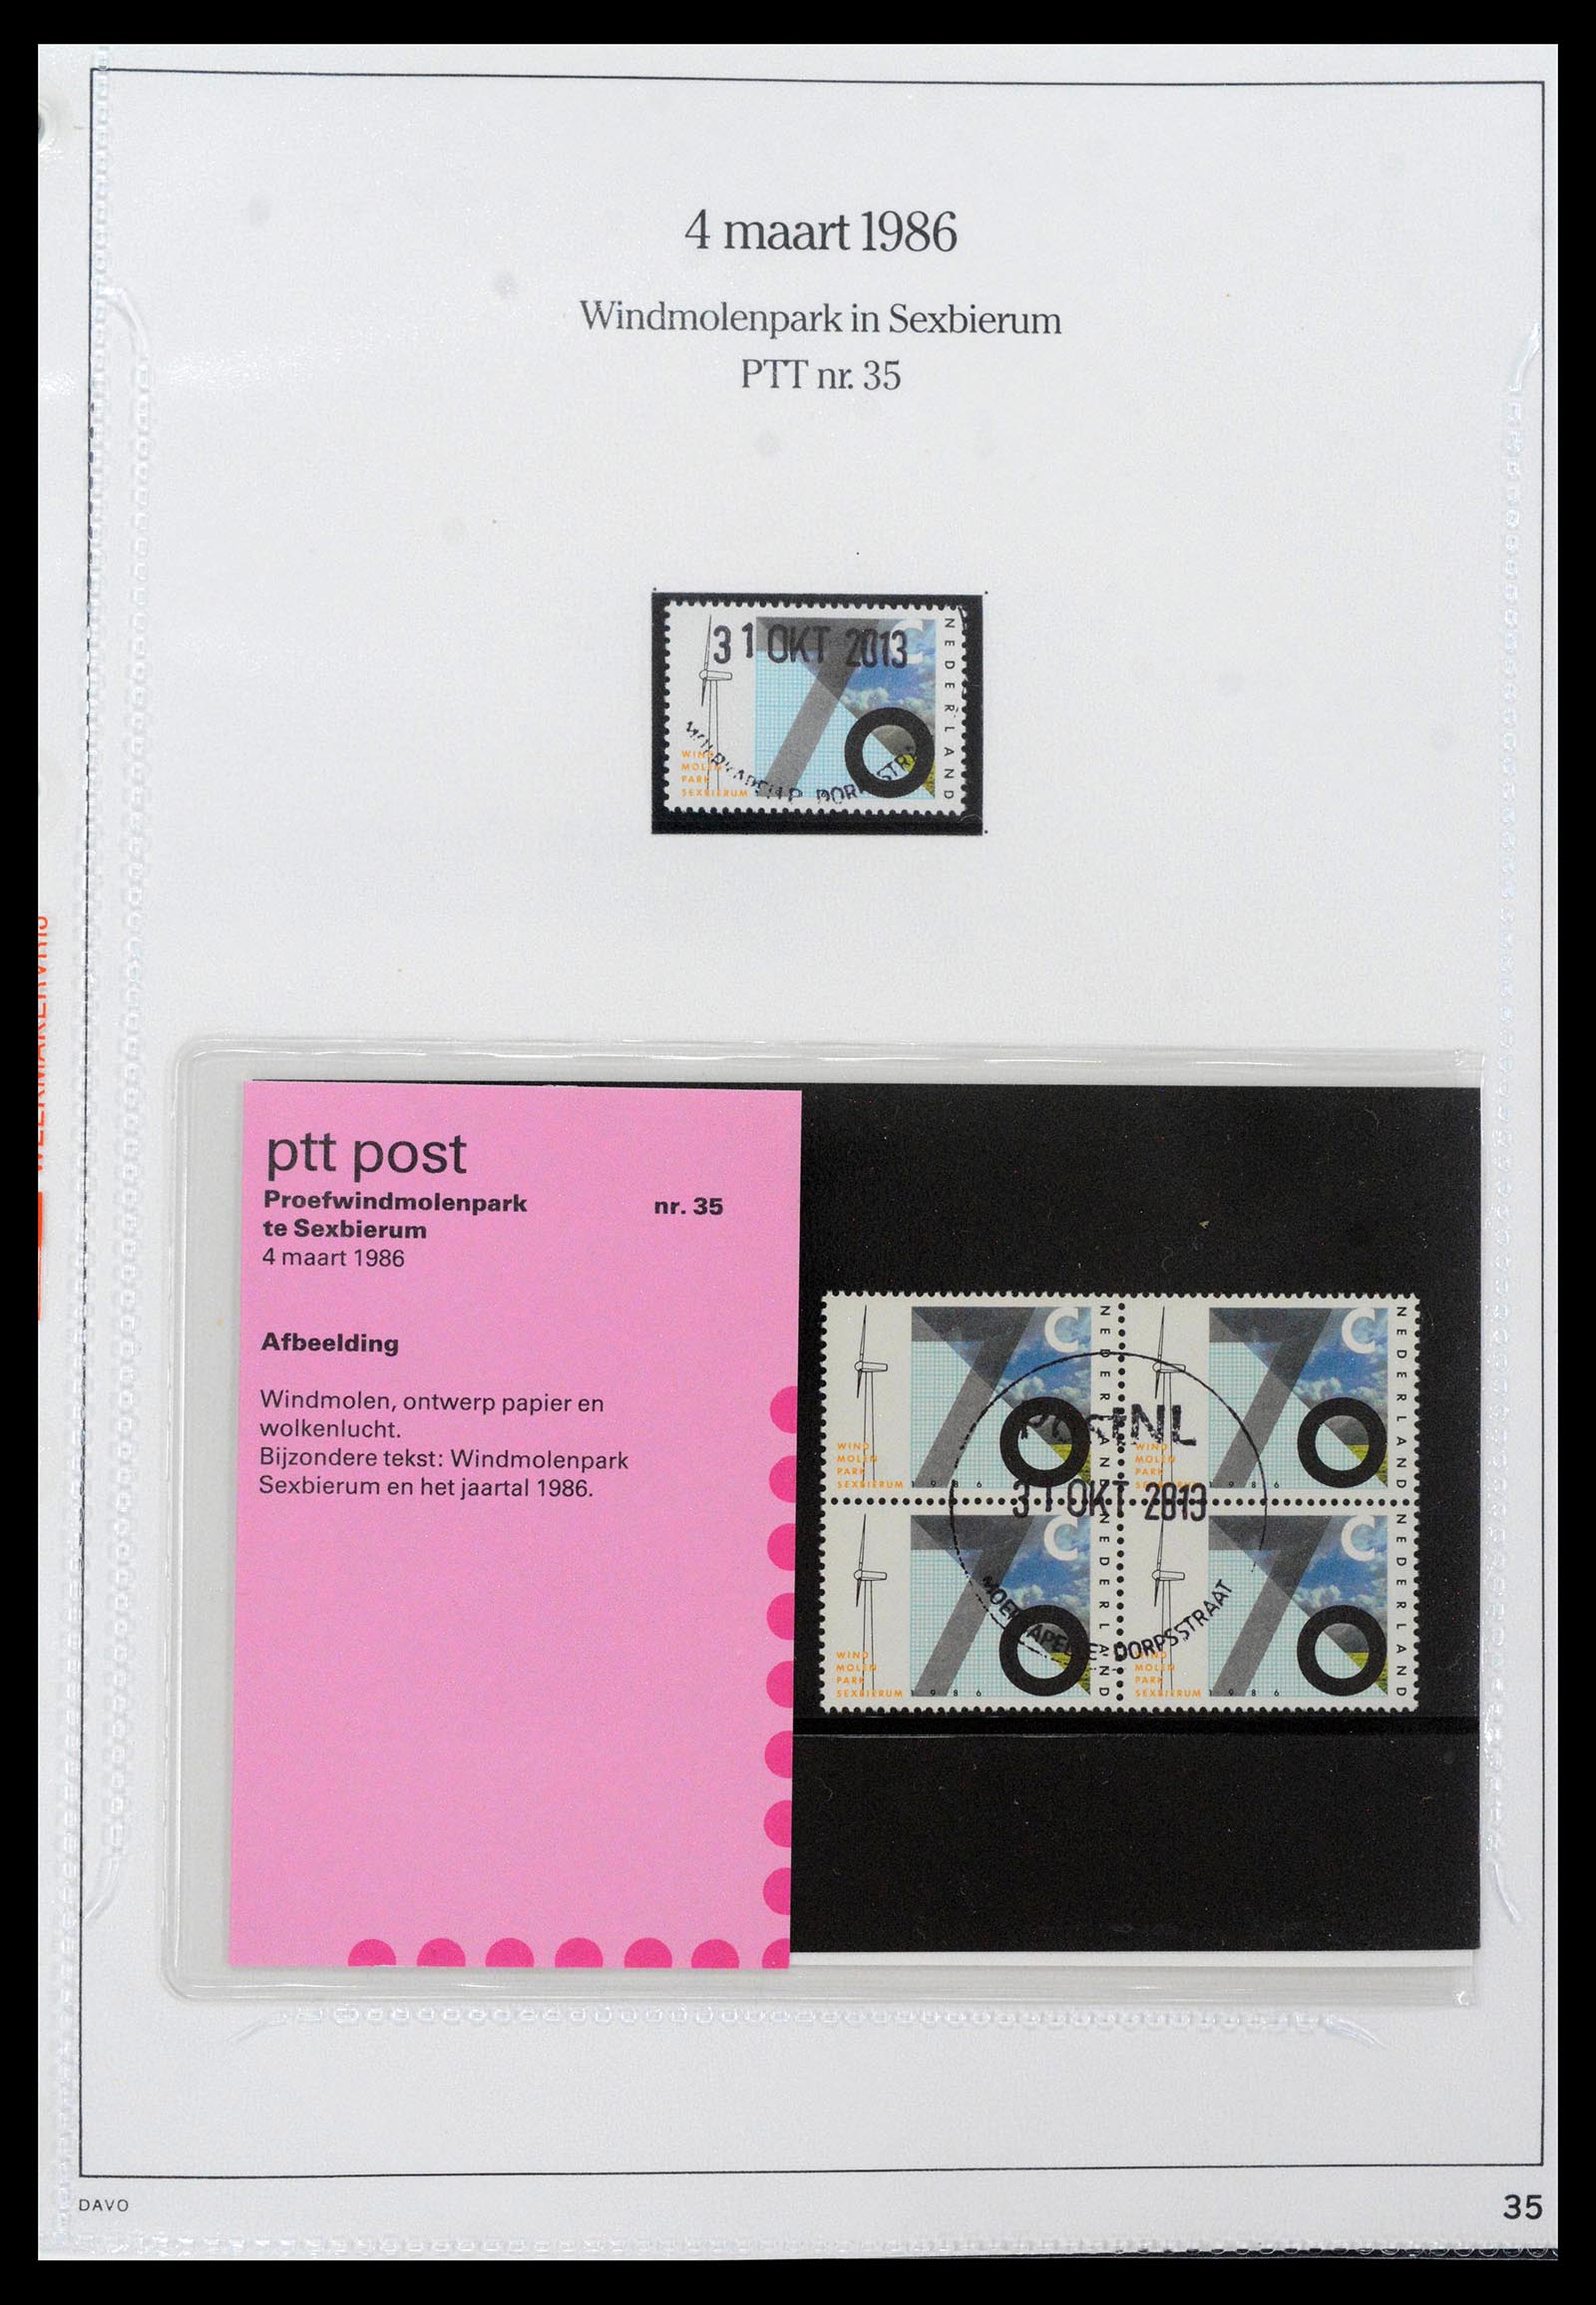 39121 0035 - Stamp collection 39121 Netherlands presentationpacks 1982-2001.